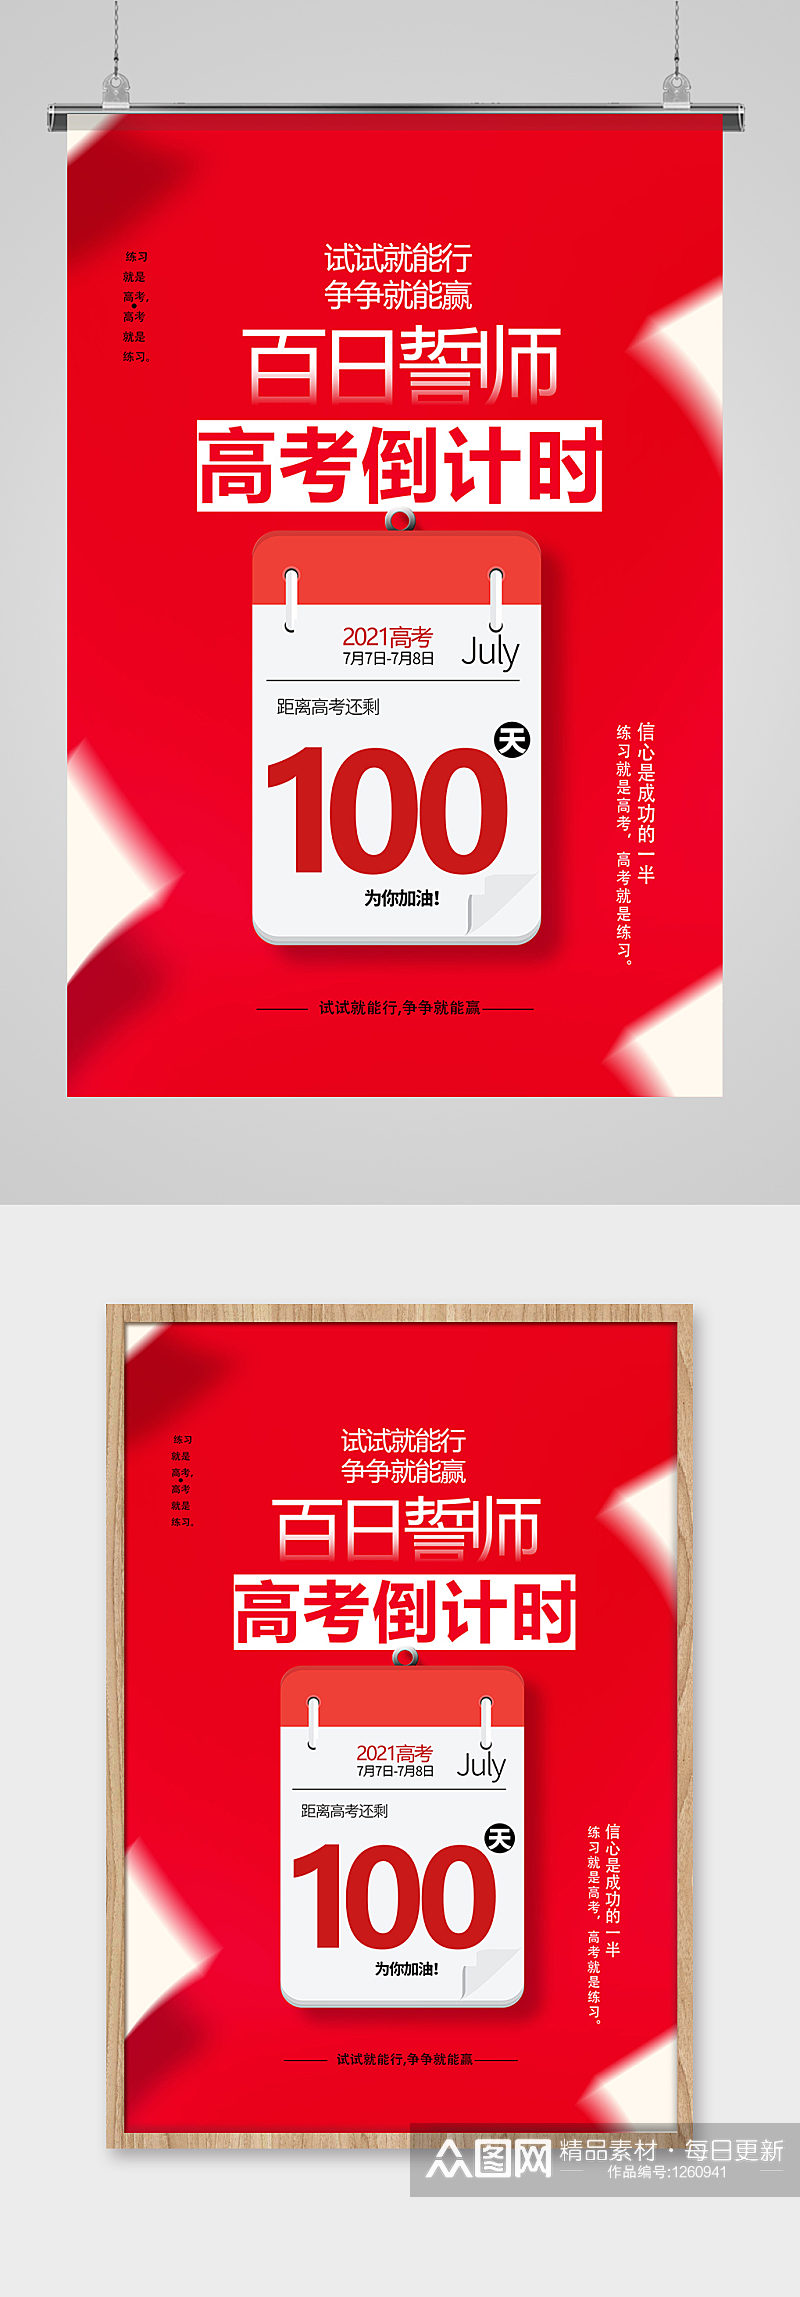 红色简洁高考倒计时100天海报设计素材